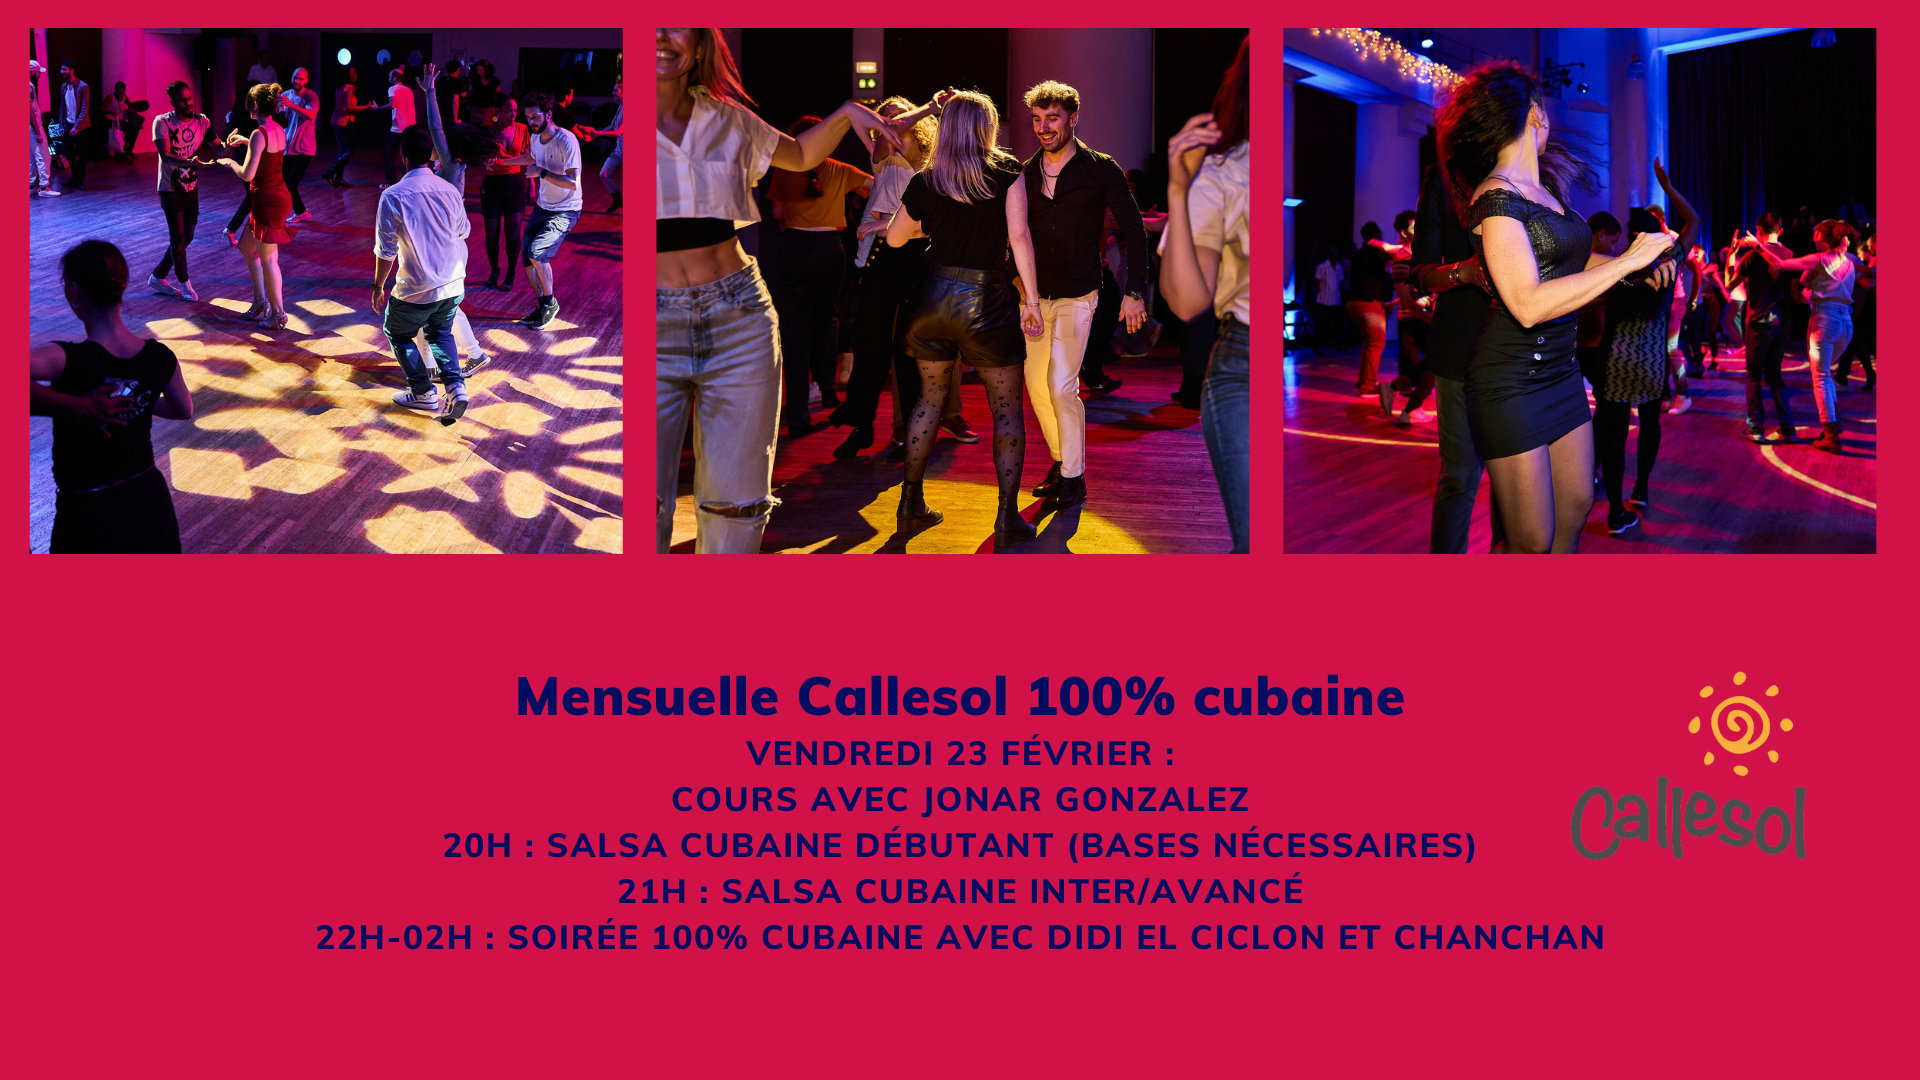 Mensuelle Callesol 100% cubaine le 23 février